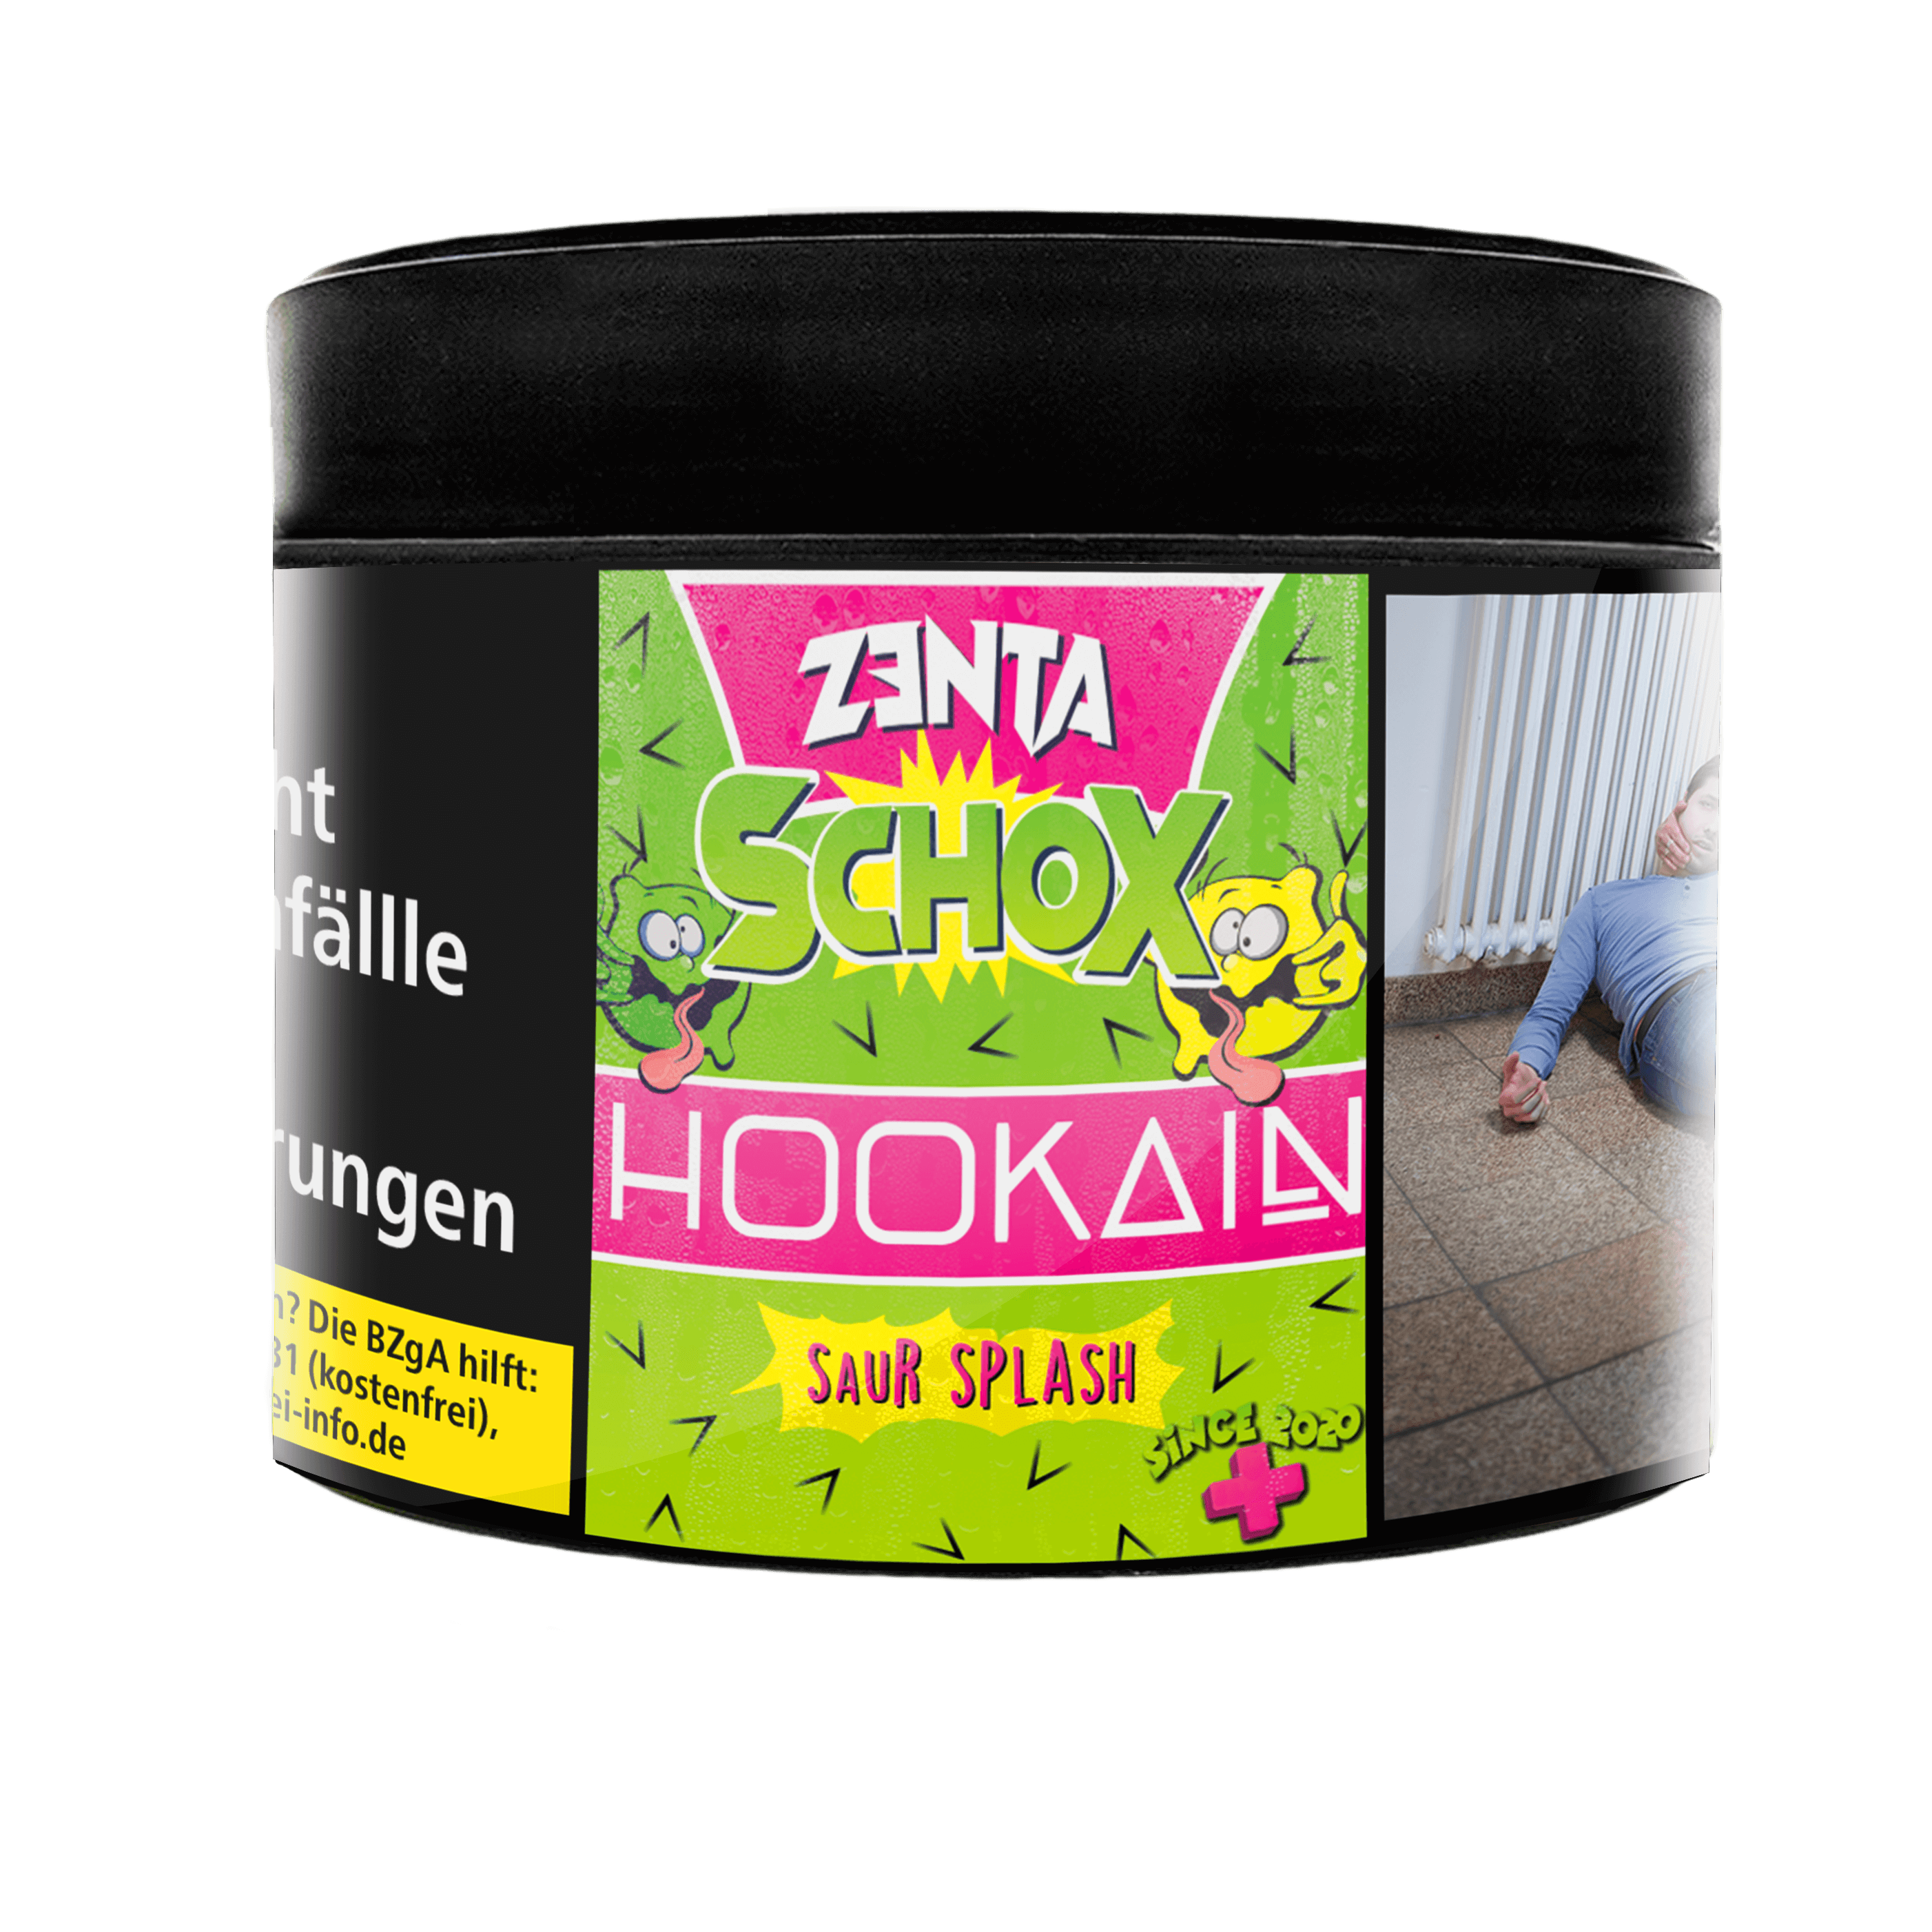 Hookain Zenta Schox 200g